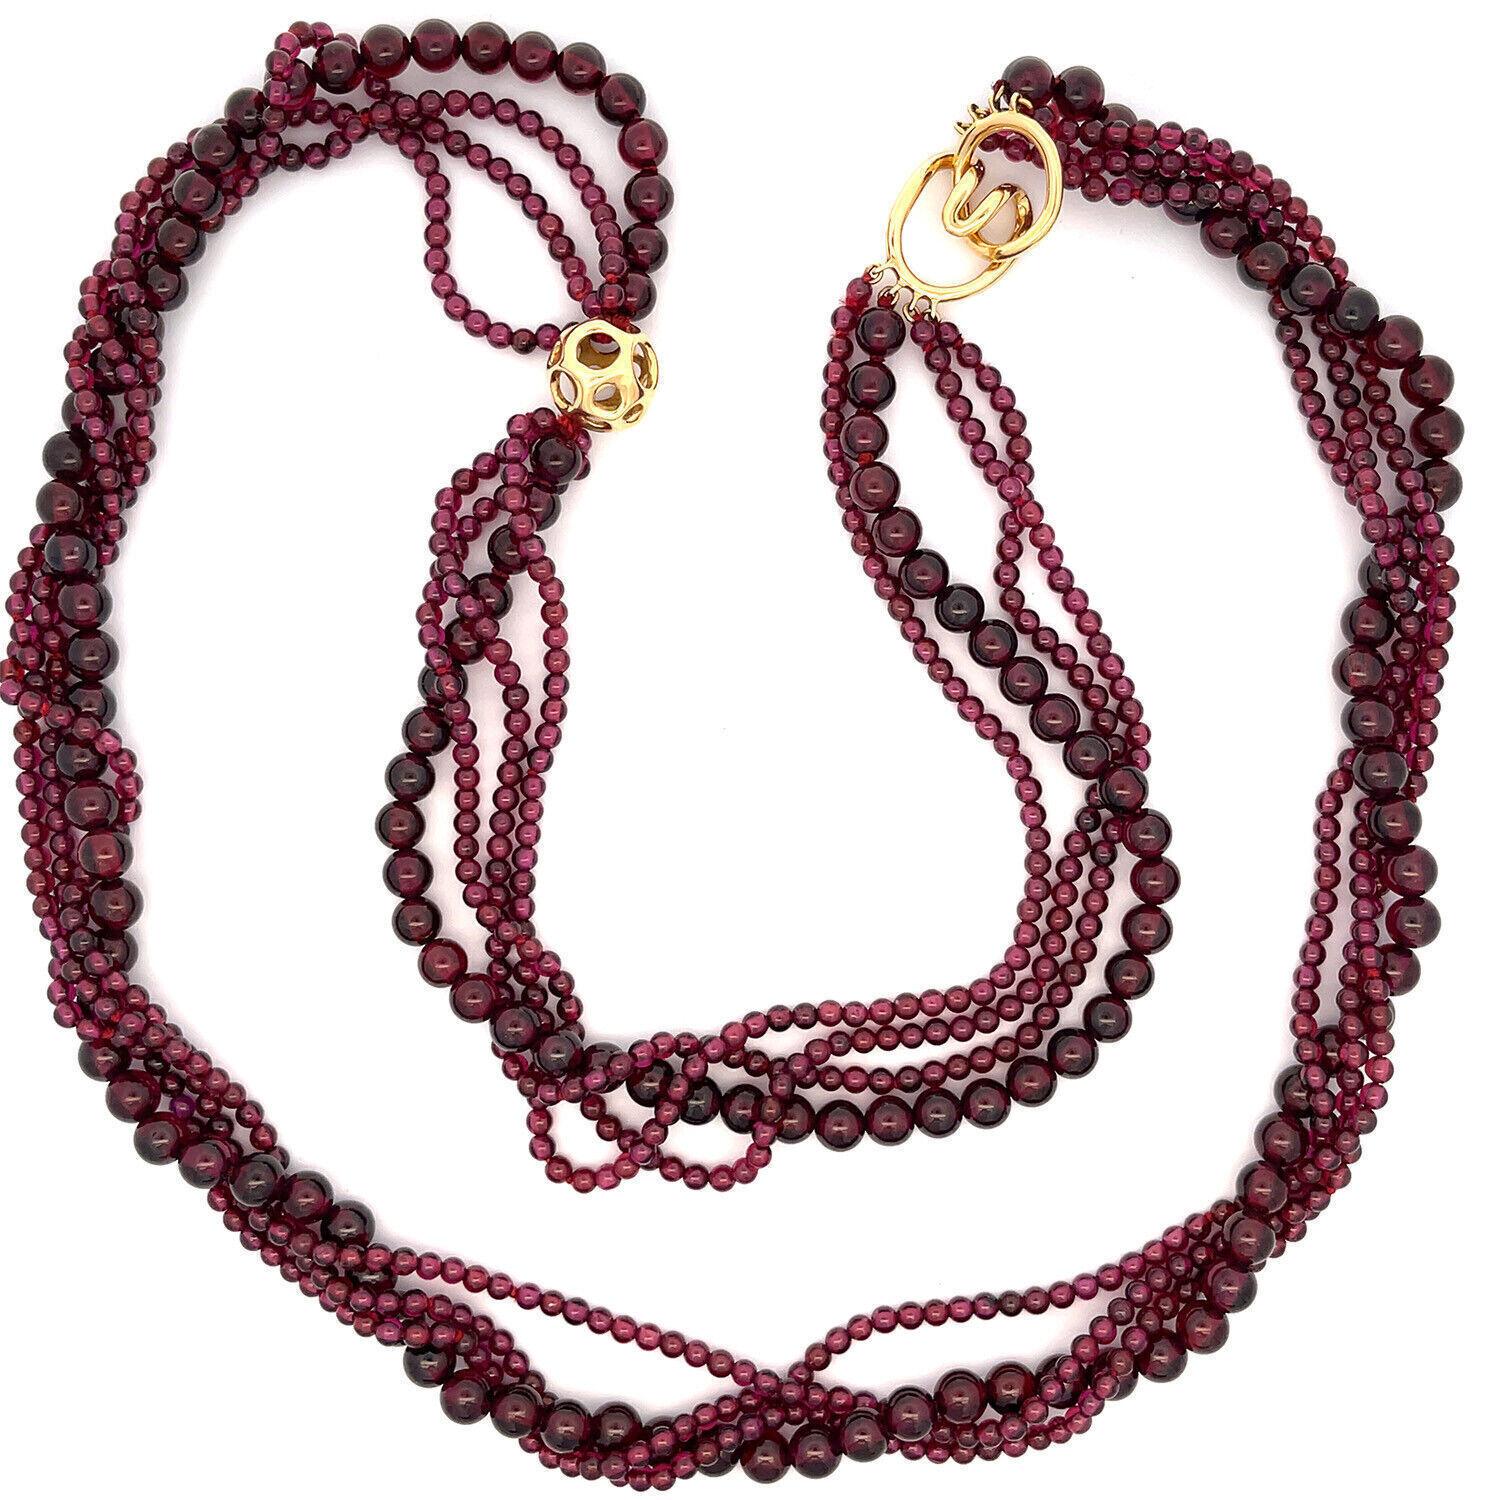 Diese lange, elegante Halskette von Tiffany & Co. der Designerin Angela Cummings hat 4 Stränge mit Granatperlen, 3 Stränge mit kleinen Perlen, der 4. Strang hat größere Perlen. Sie ist mit einer 13 mm großen Goldkugel im offenen Stil verziert und